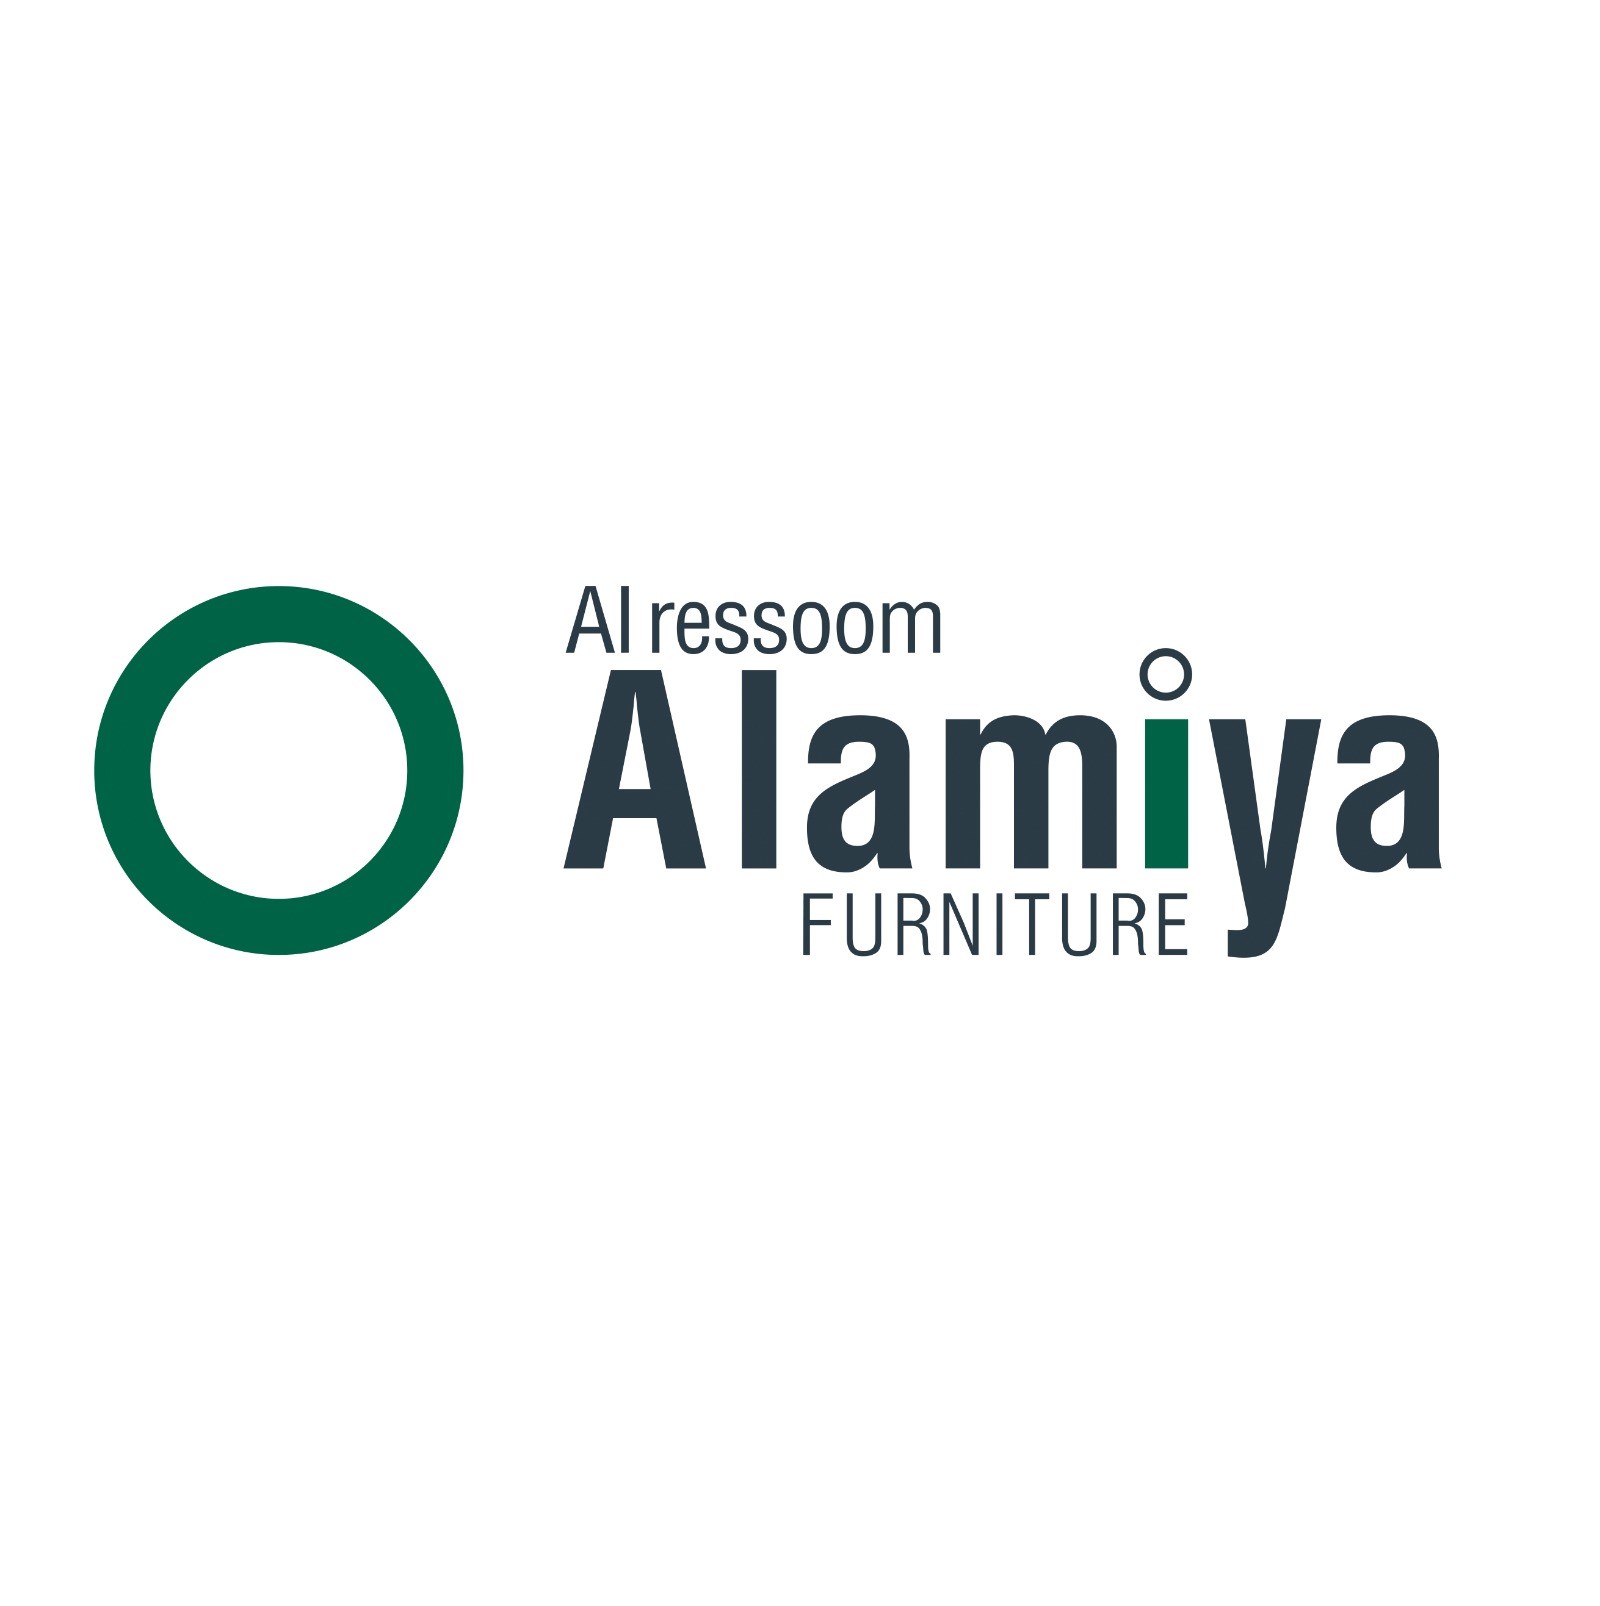 Alamiya Furniture